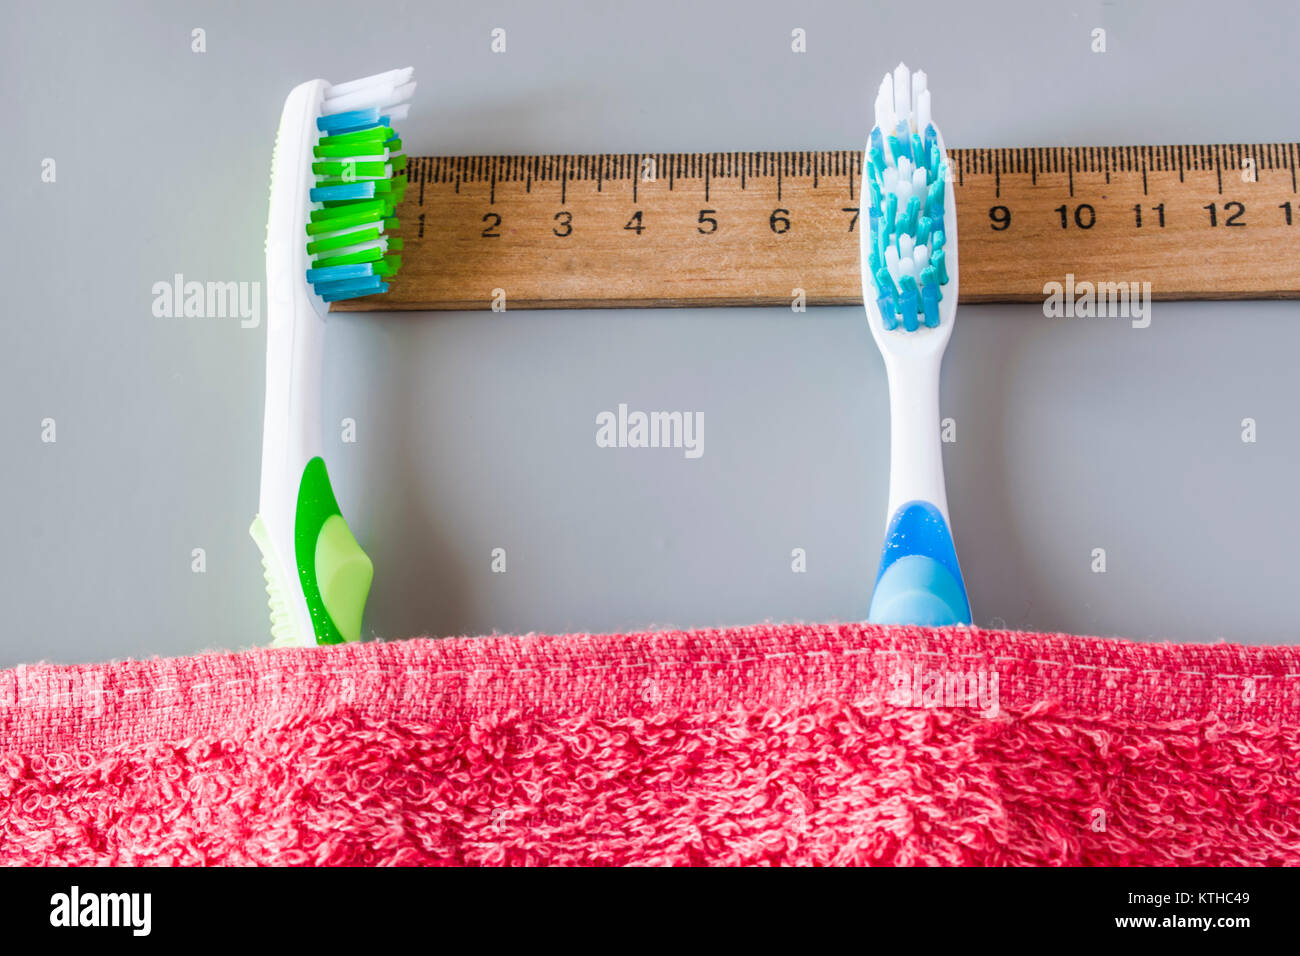 Kunststoff Zahnbürsten liegen auf dem Lineal unter dem Handtuch. Zeigt die Zeit an, die die Zähne putzen Stockfoto